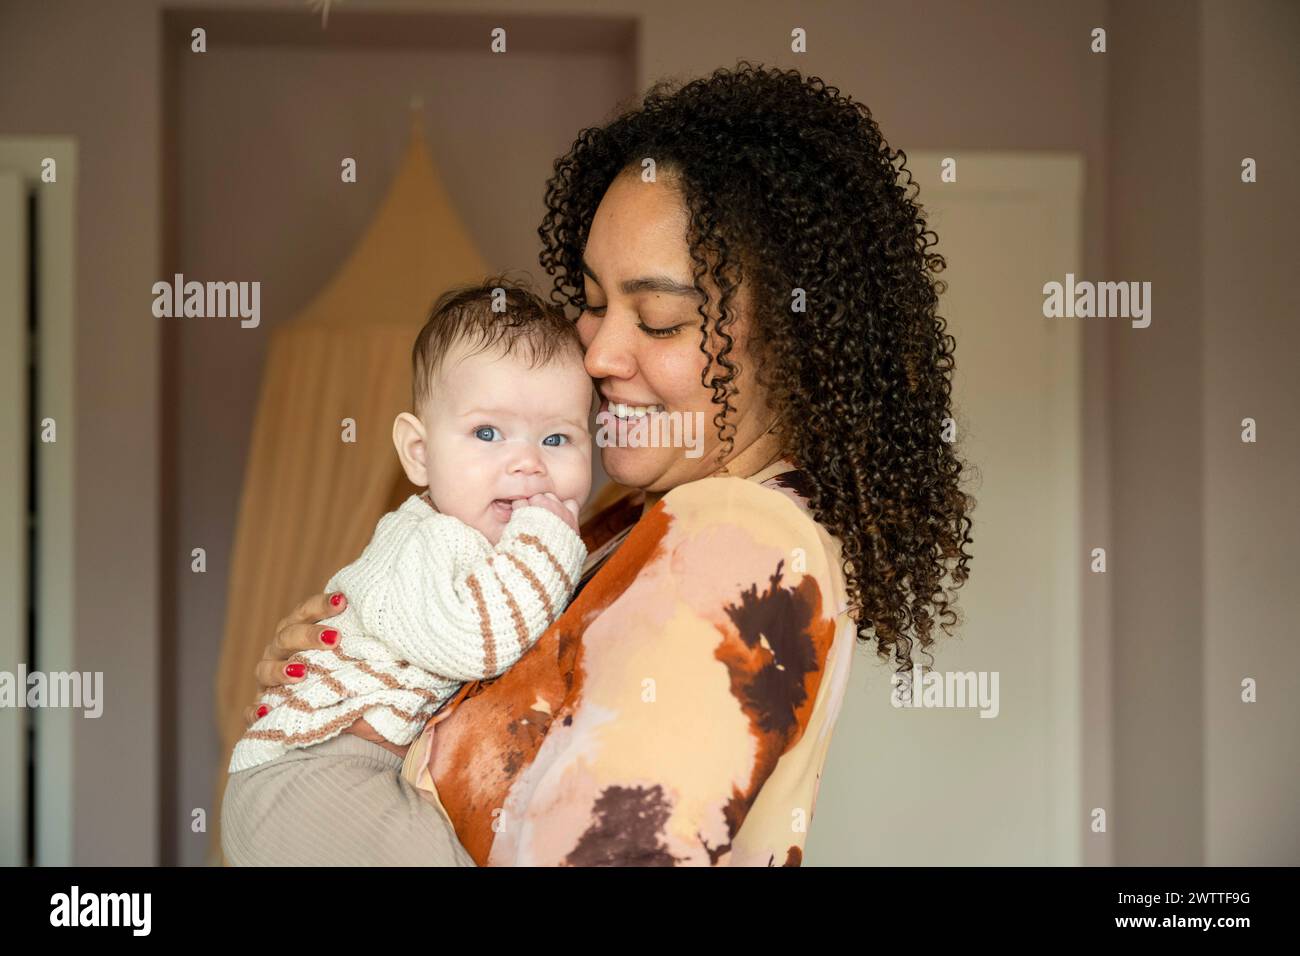 Madre amorosa sosteniendo a su bebé cerca con una sonrisa cálida. Foto de stock